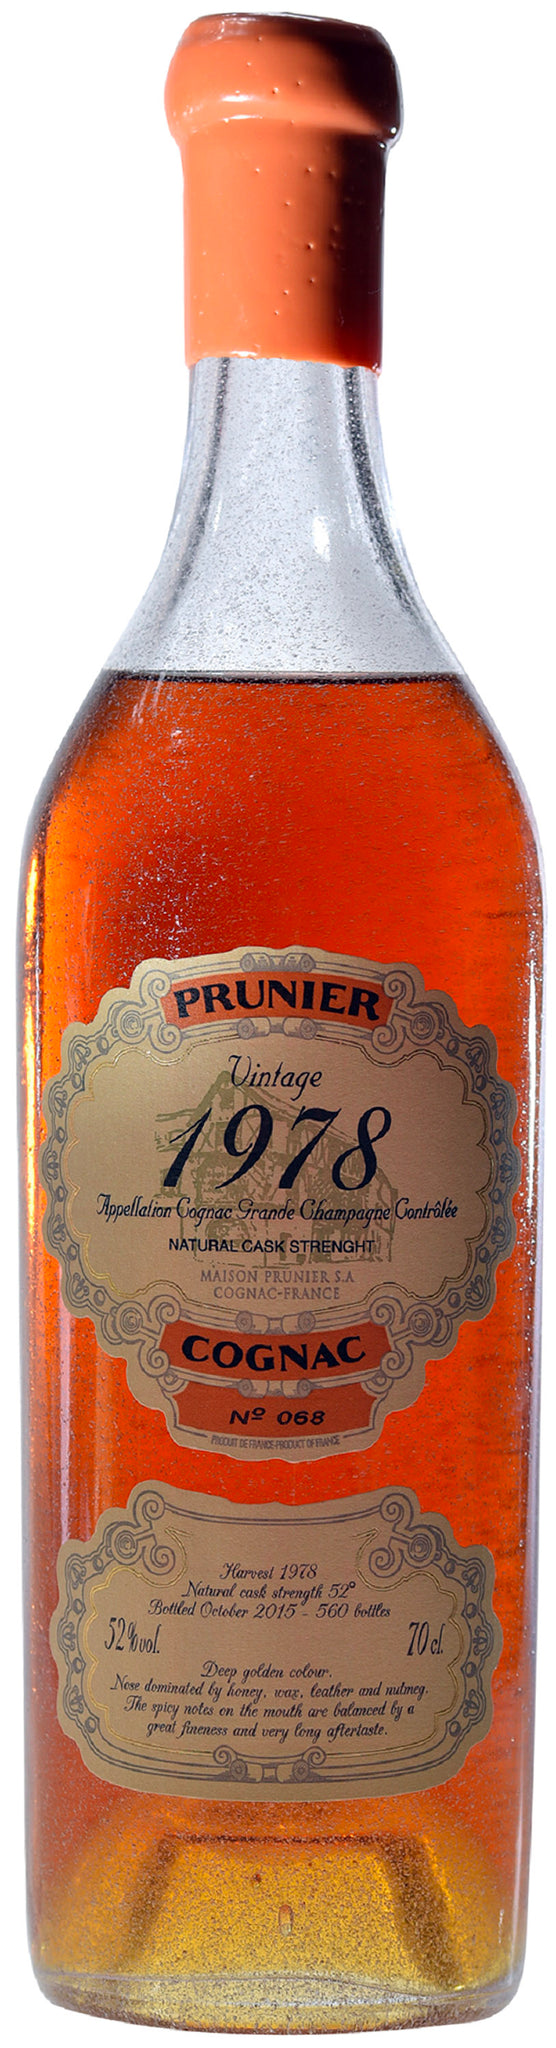 COGNAC 1978 Grande Champagne